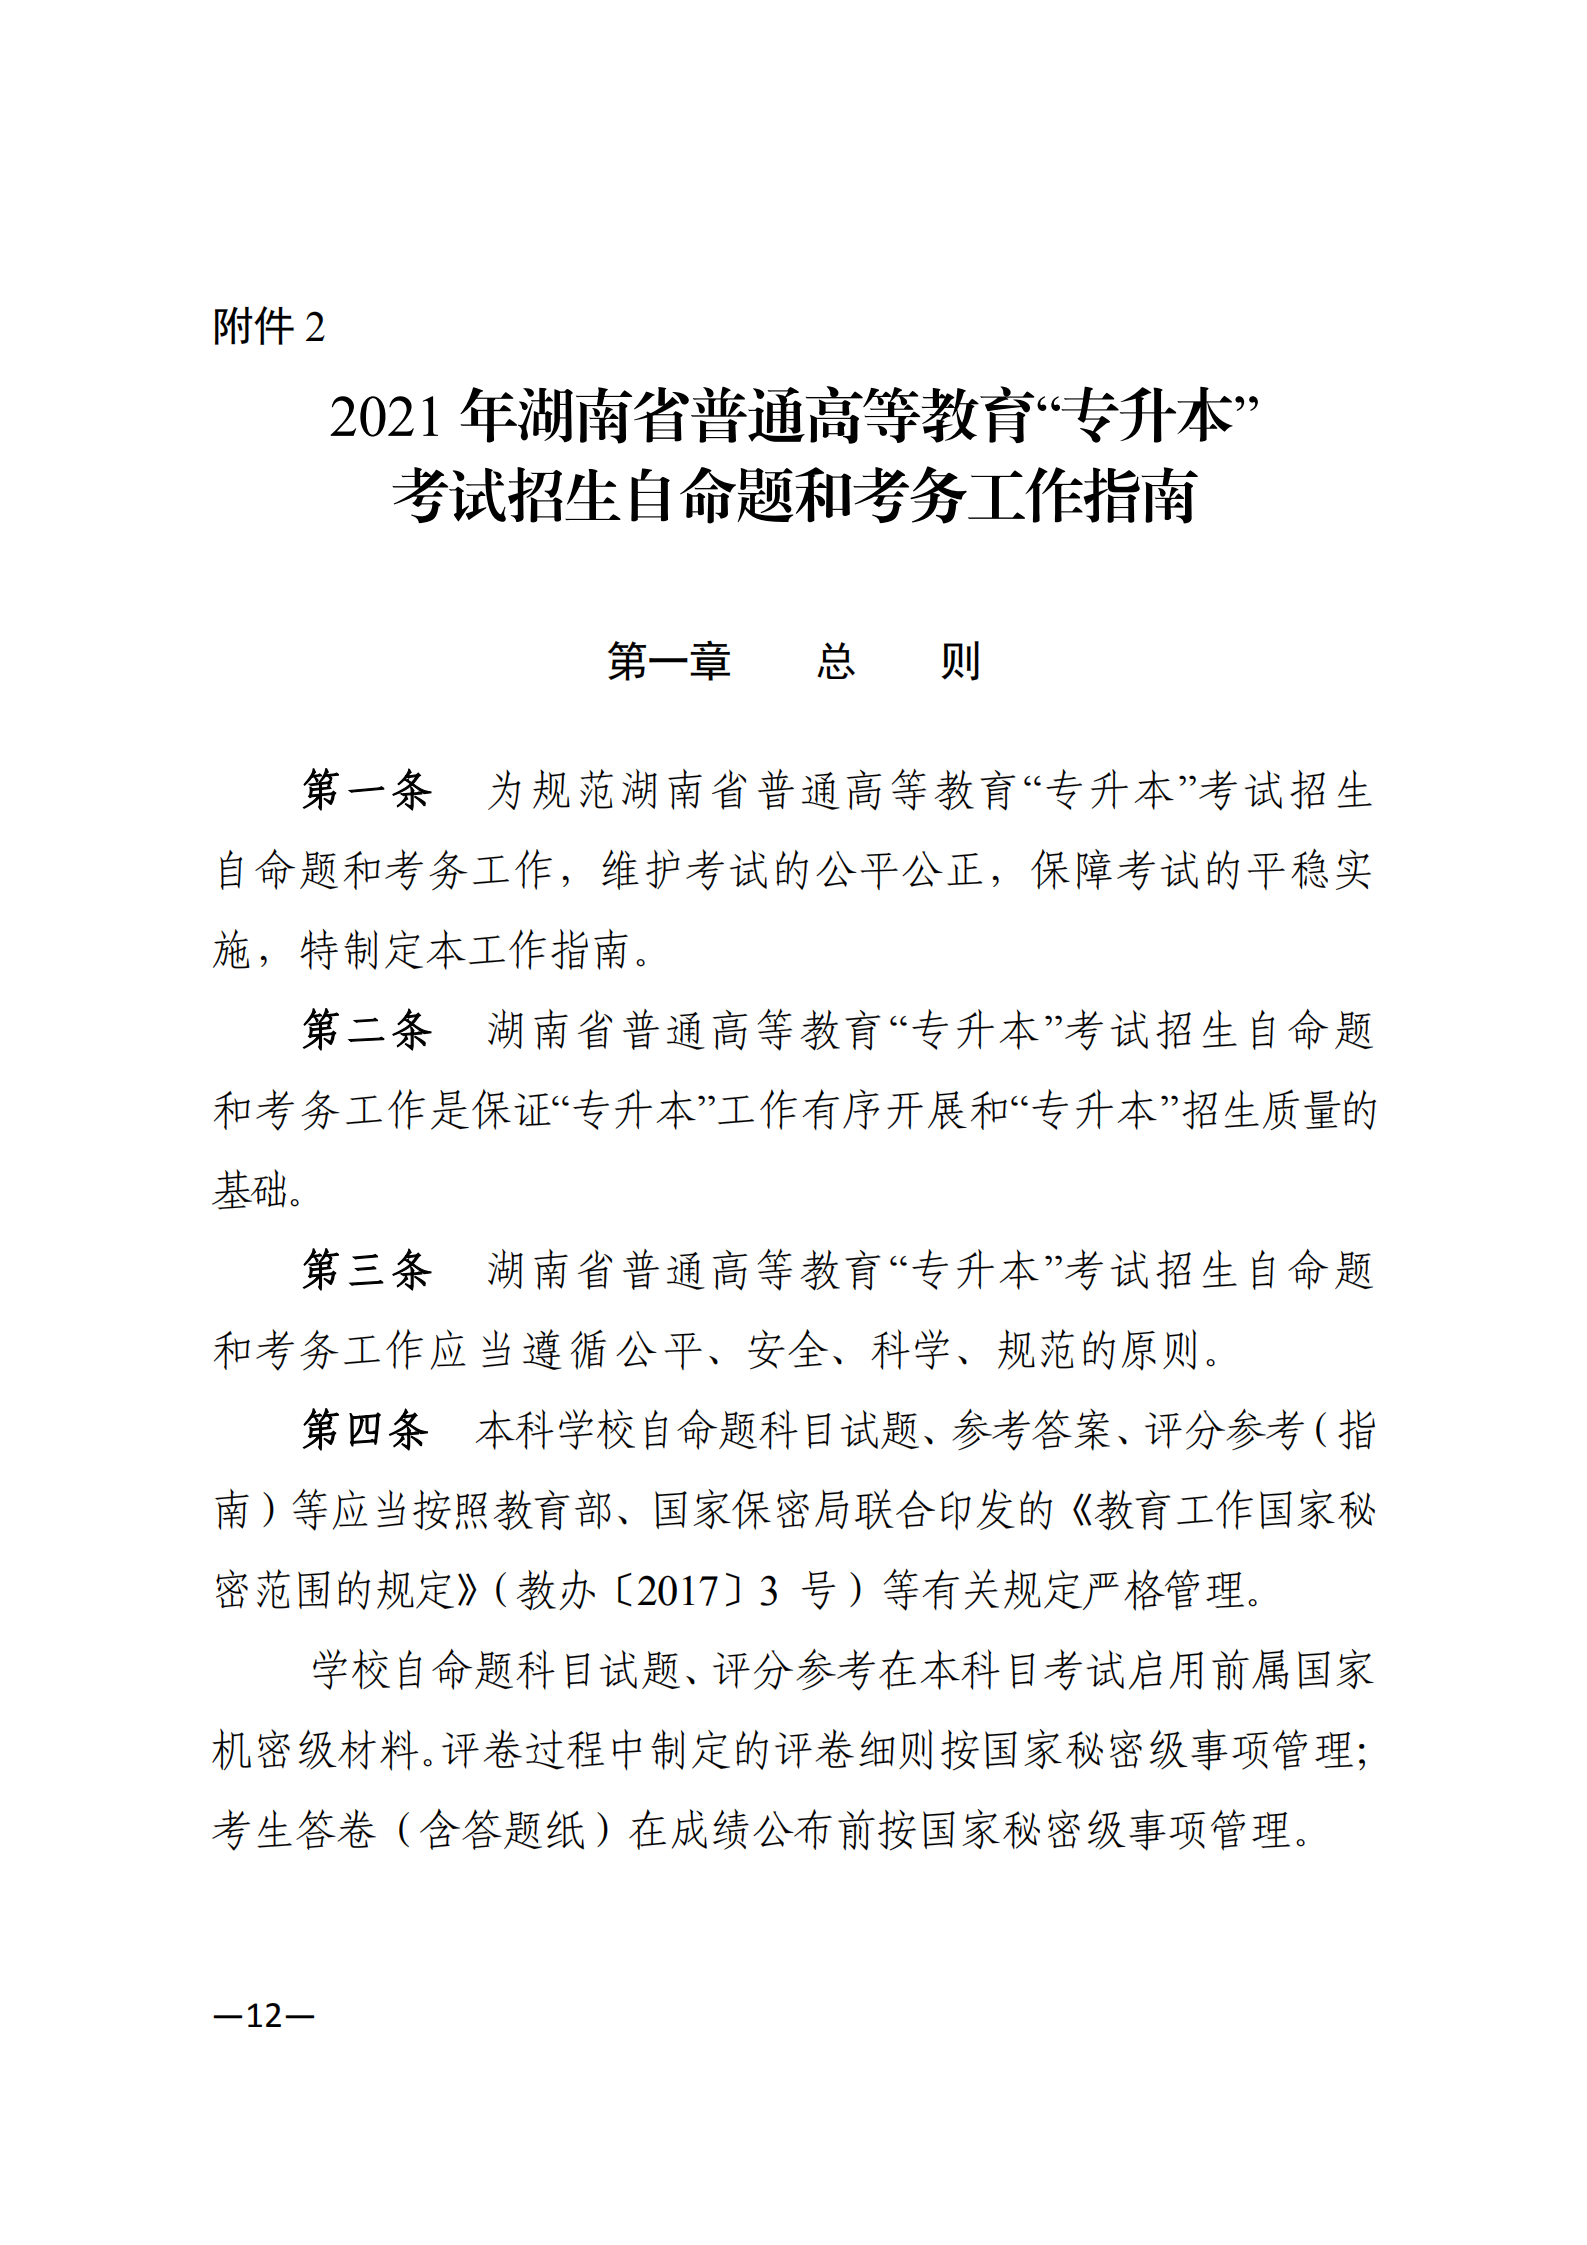 3_湘教发〔2021〕2号 关于印发《2021年湖南省普通高等教育“专升本”考试招生工作实施方案》的通知_11.png